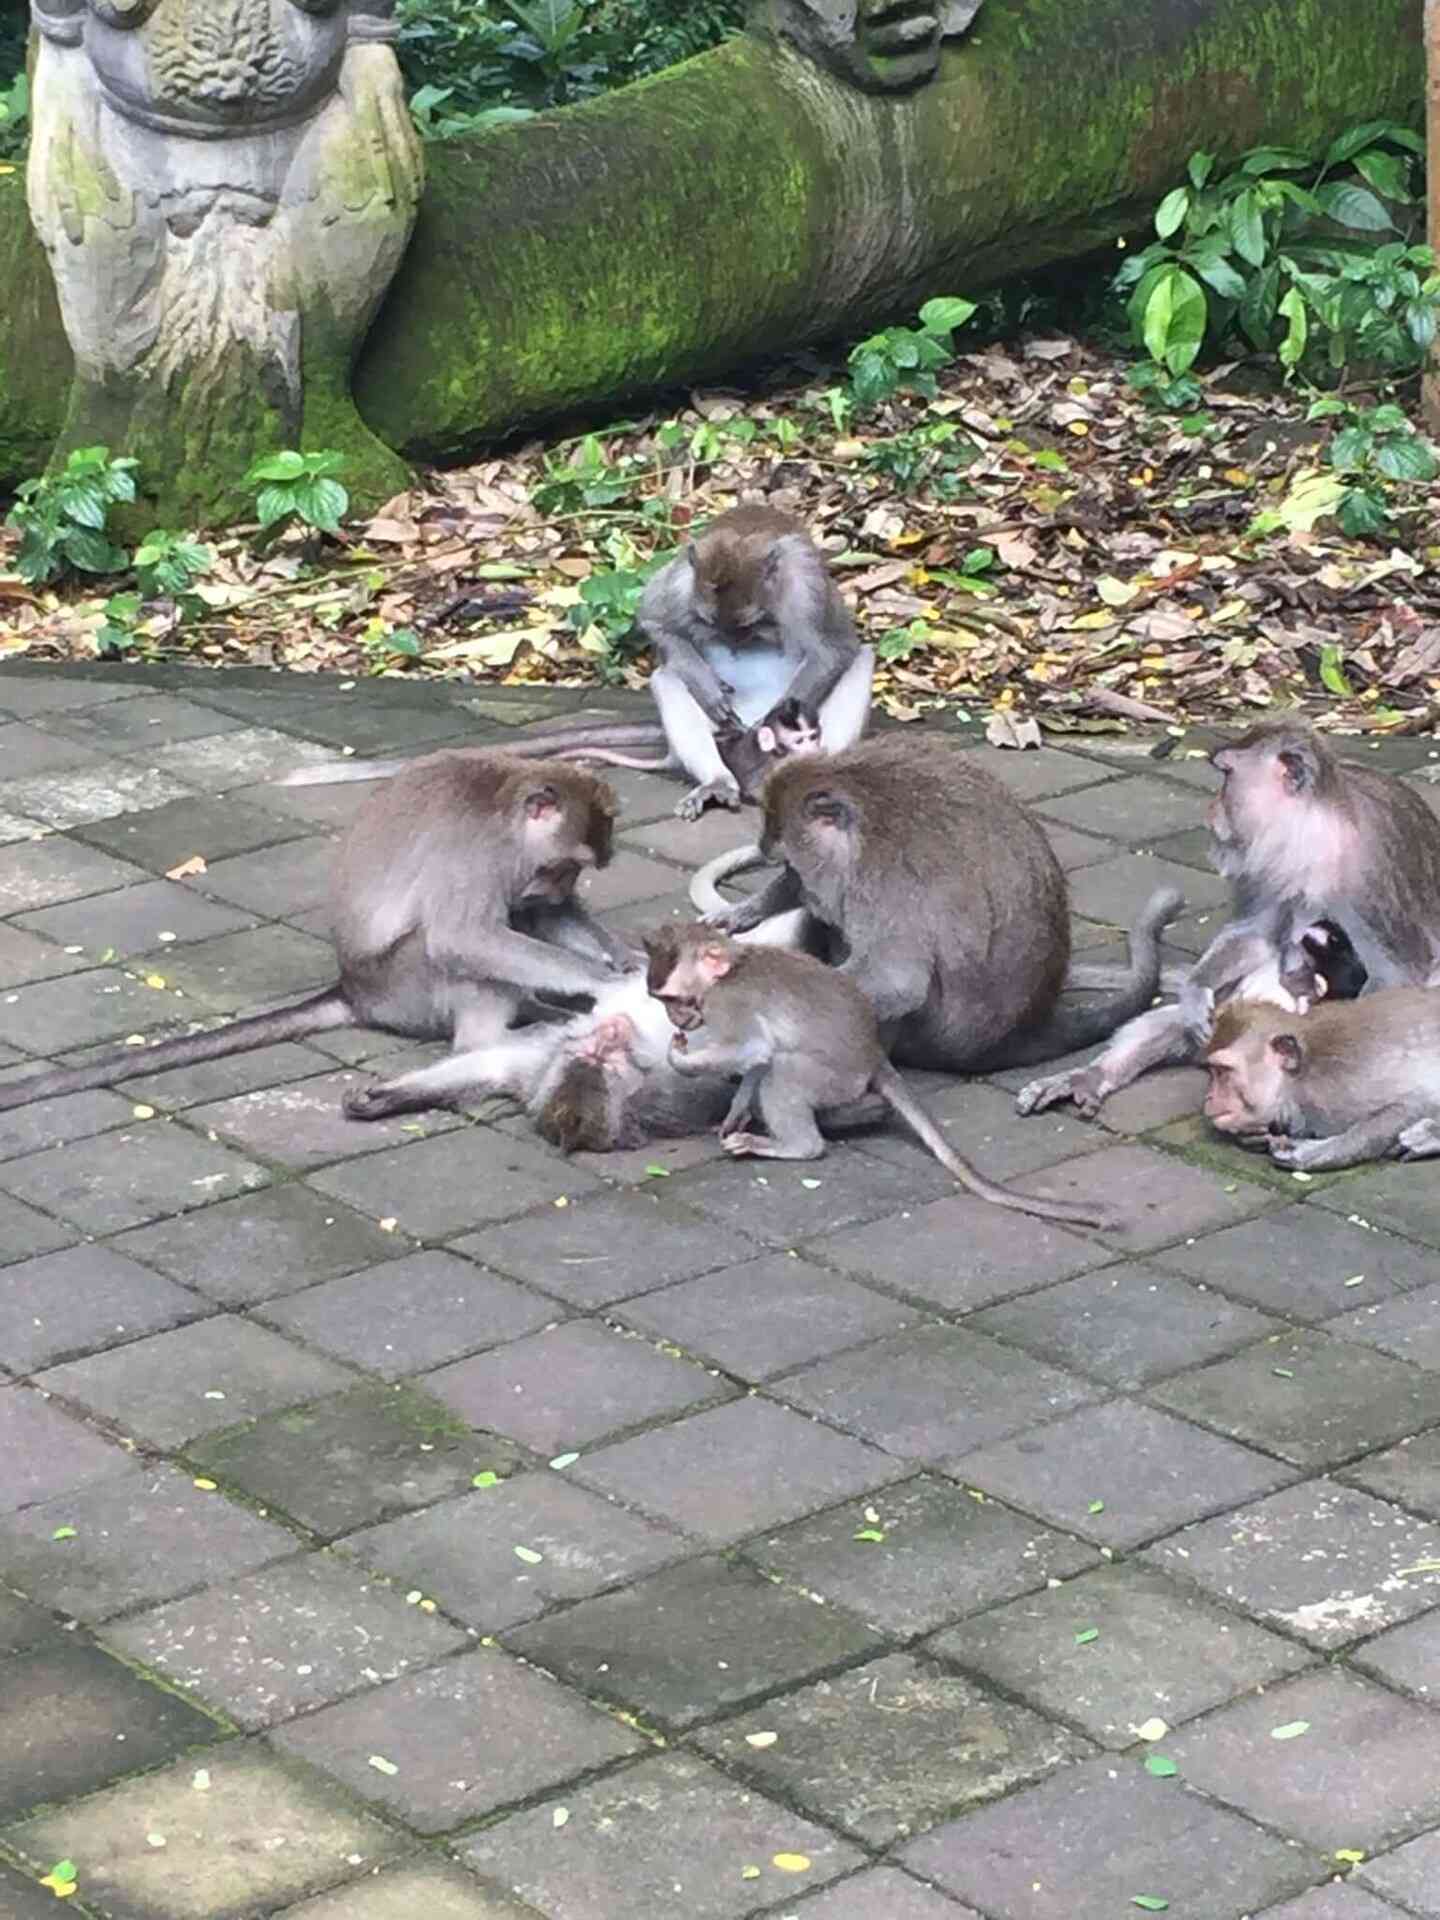 Yep, lots of monkeys